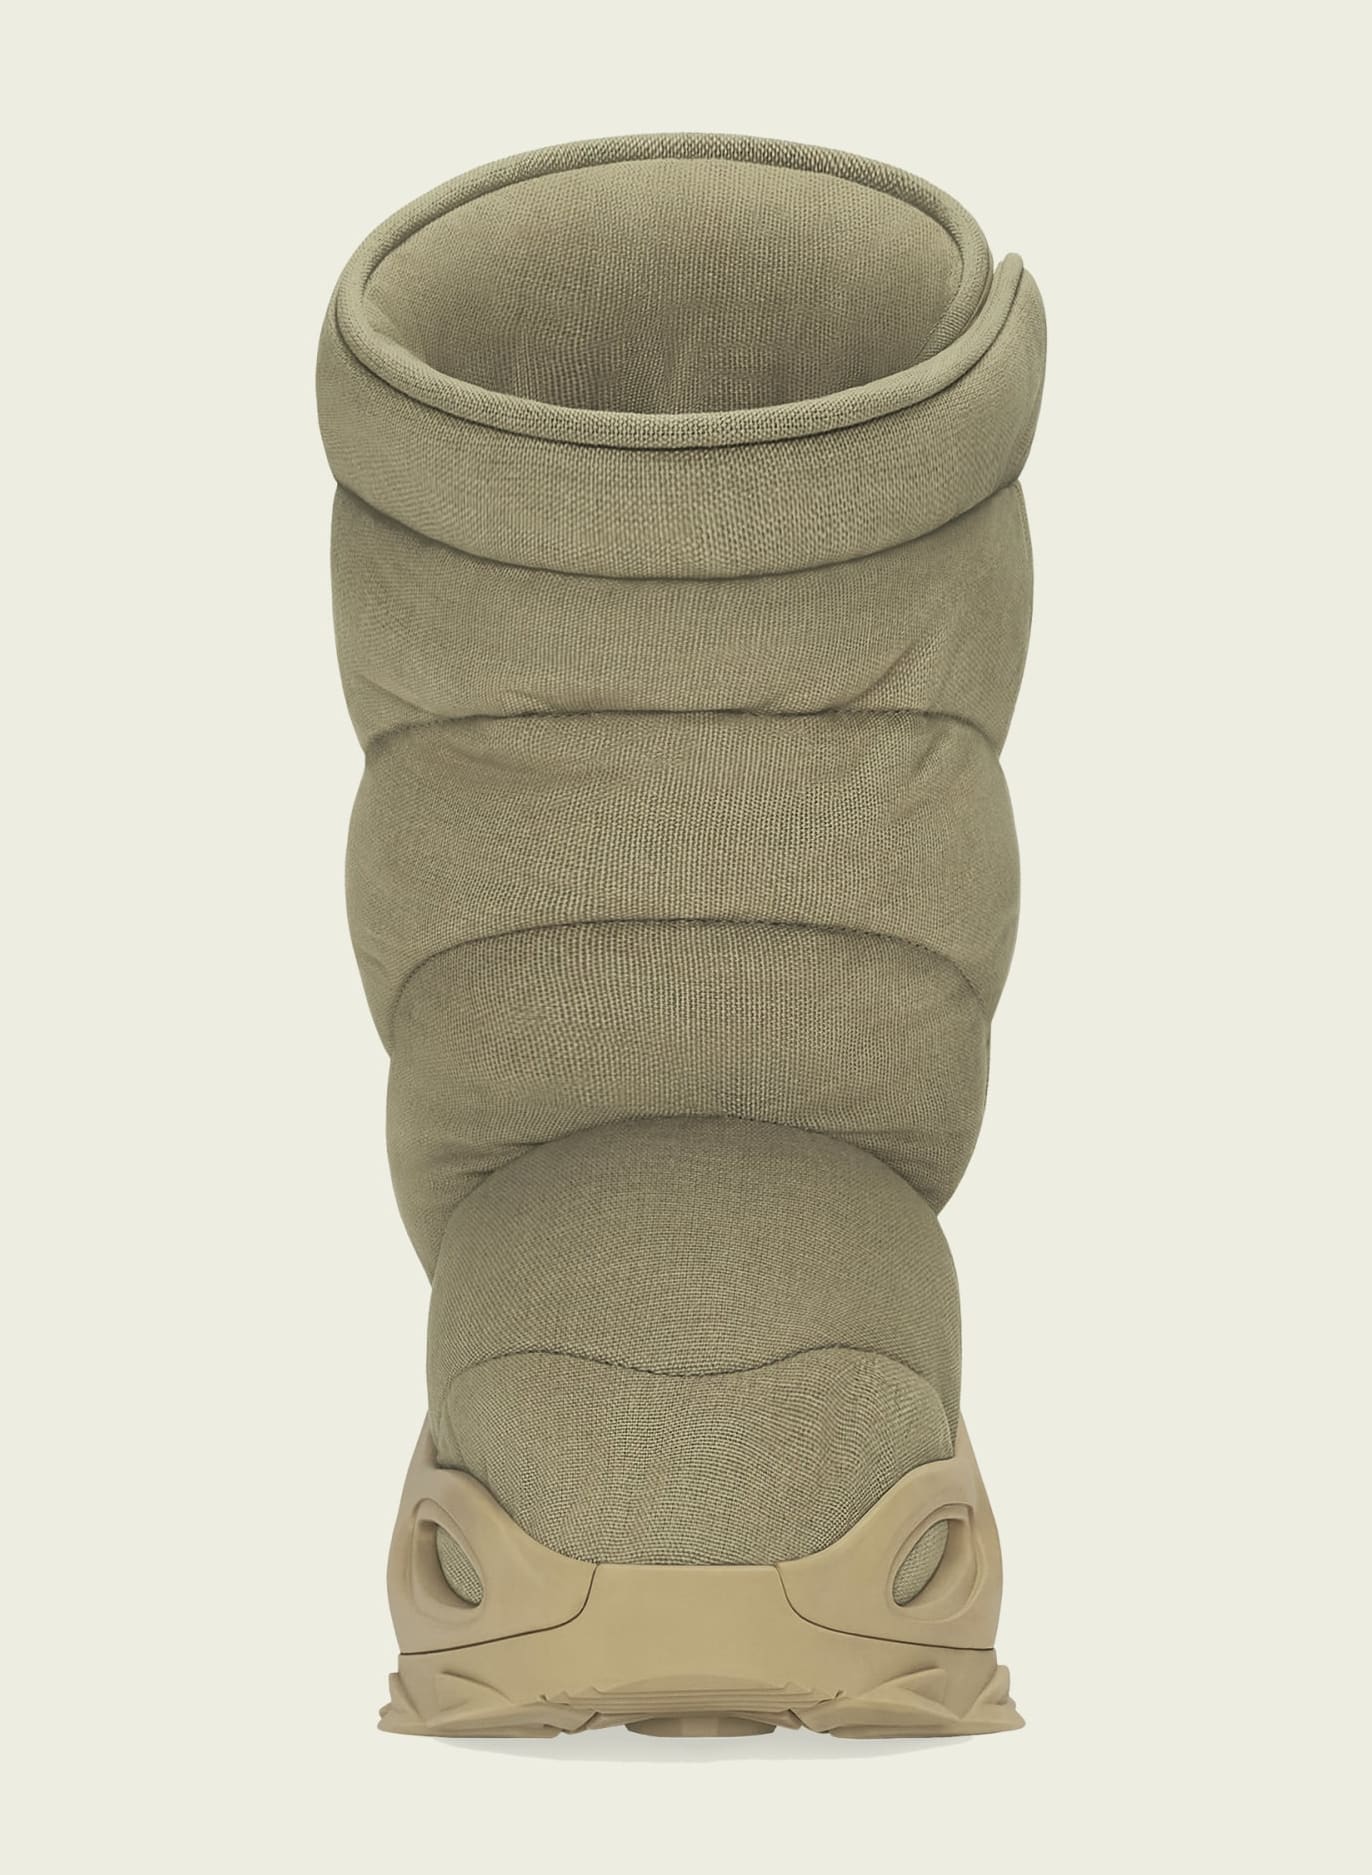 adidas-yeezy-nsltd-boot-khaki-gx0054-heel